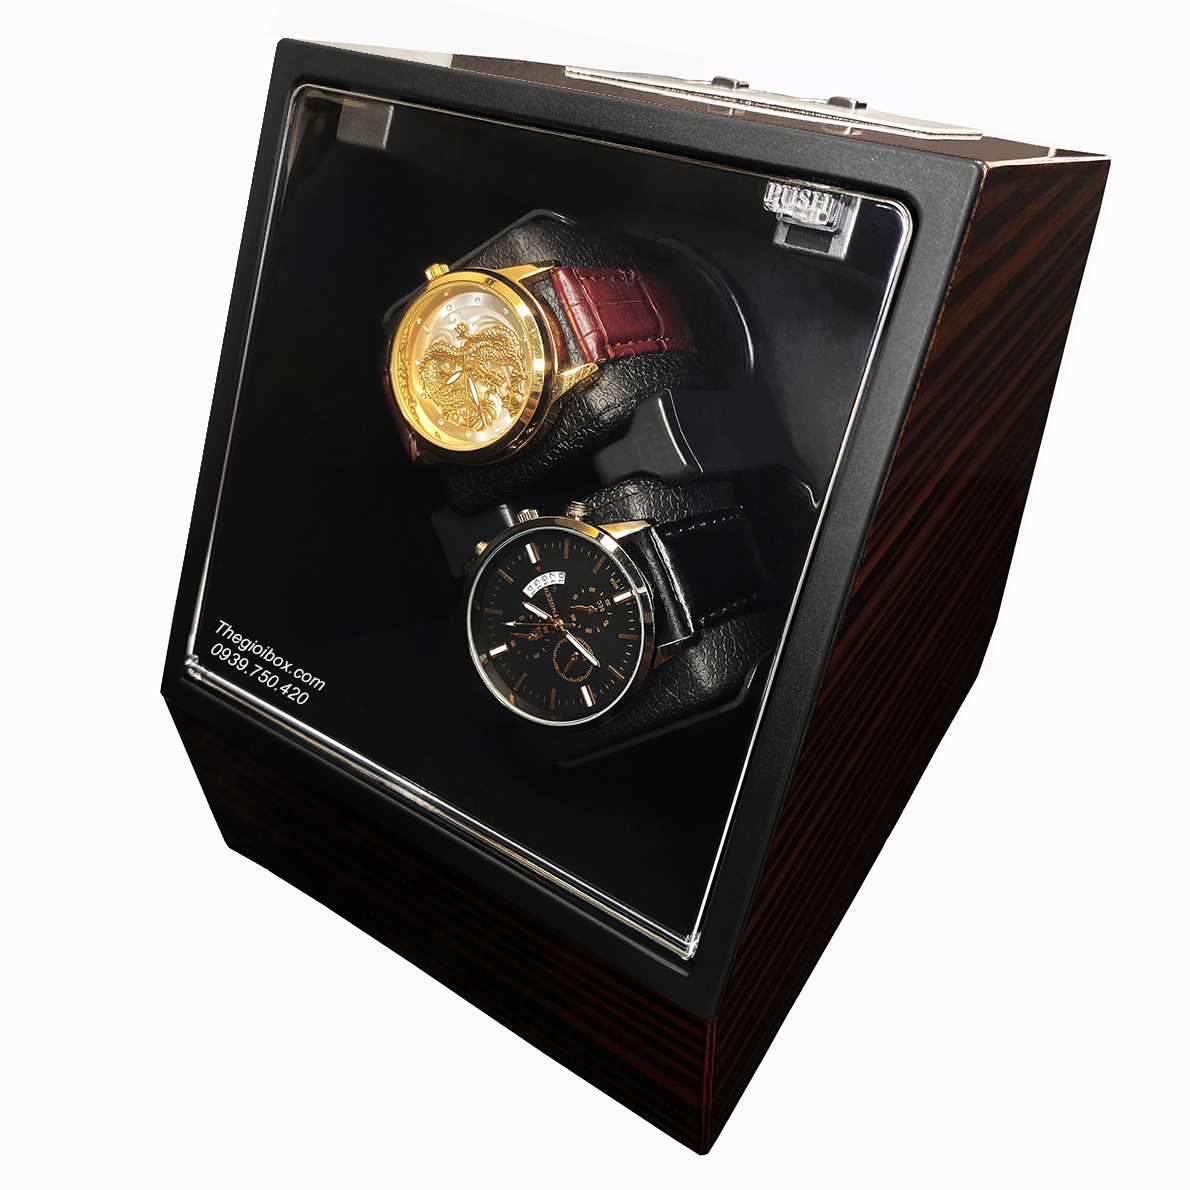 hộp đựng đồng hồ cơ 2 ngăn xoay vỏ gỗ nâu nắp kính nghiêng 45 độ giá rẻ